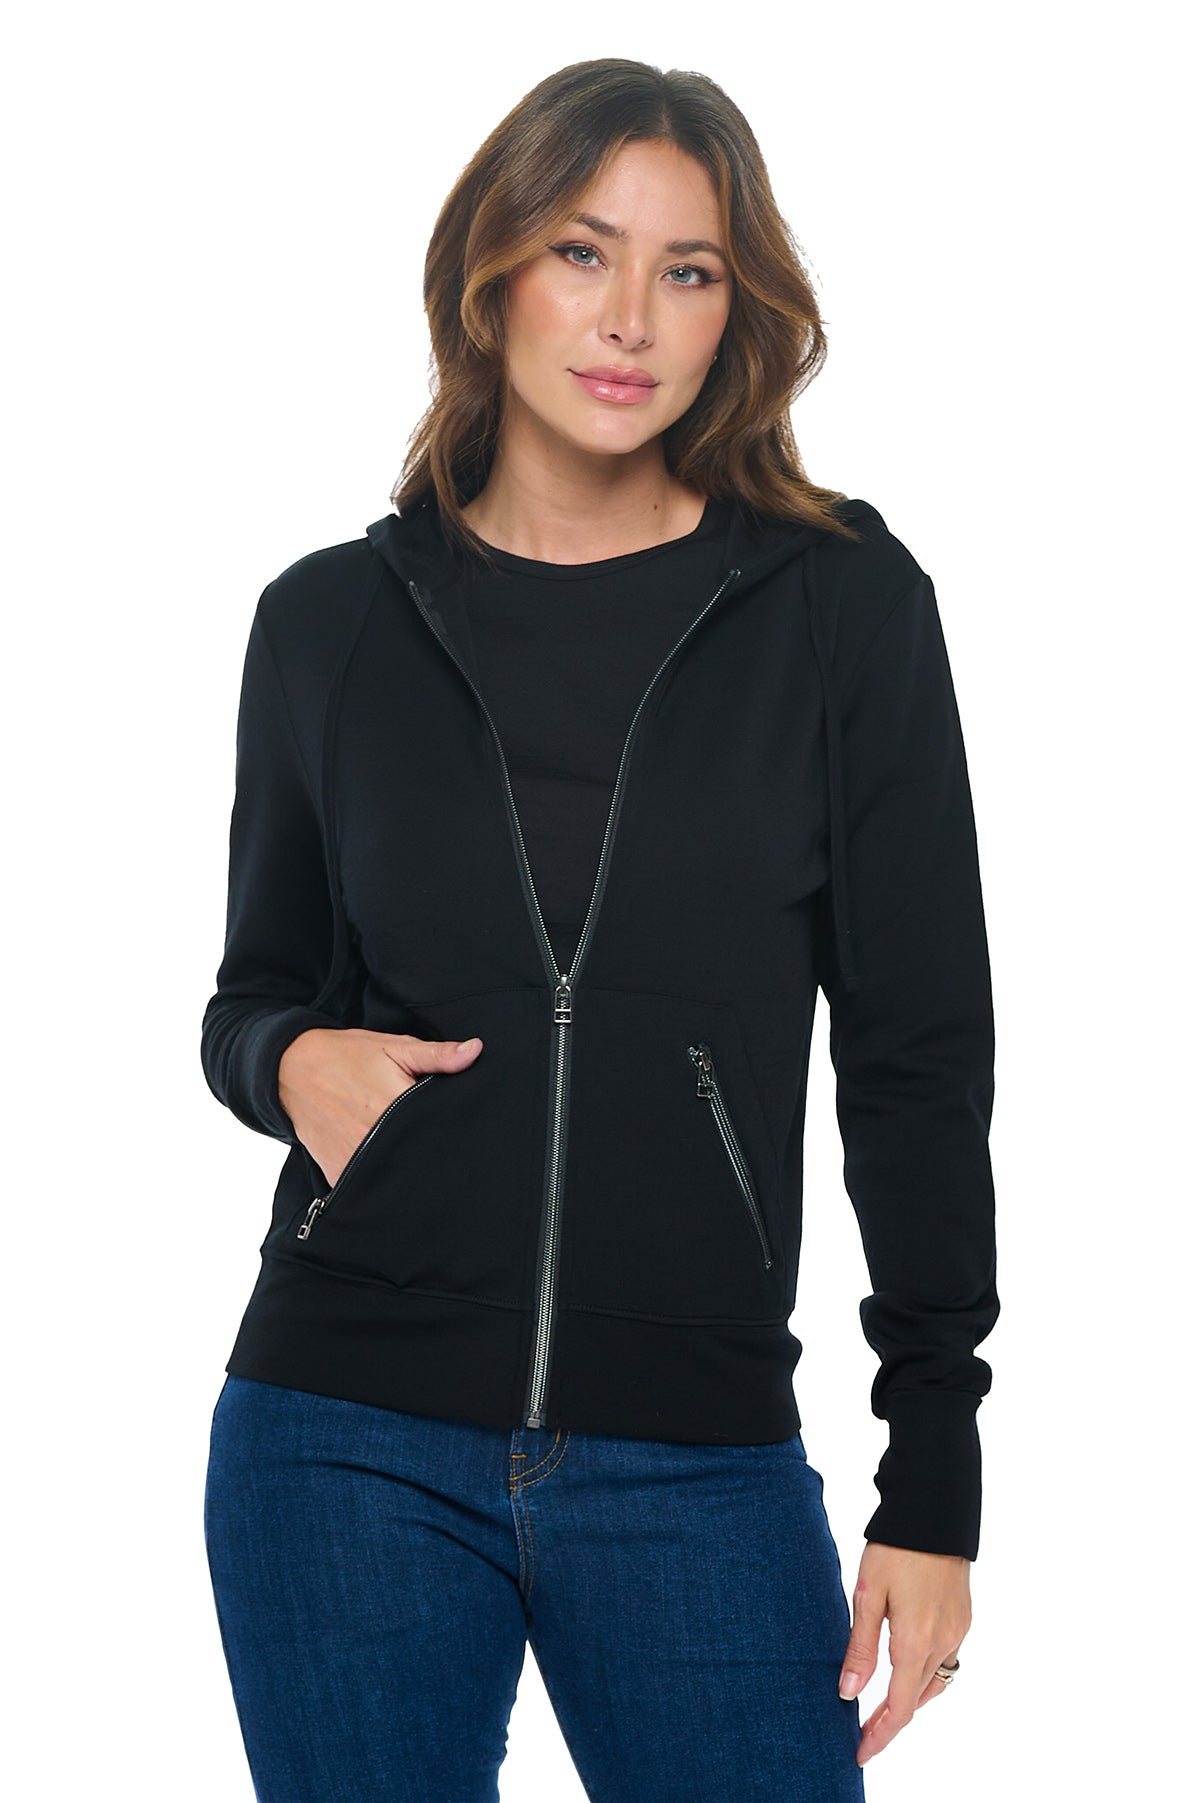 Merino wool hoodie for women in black color